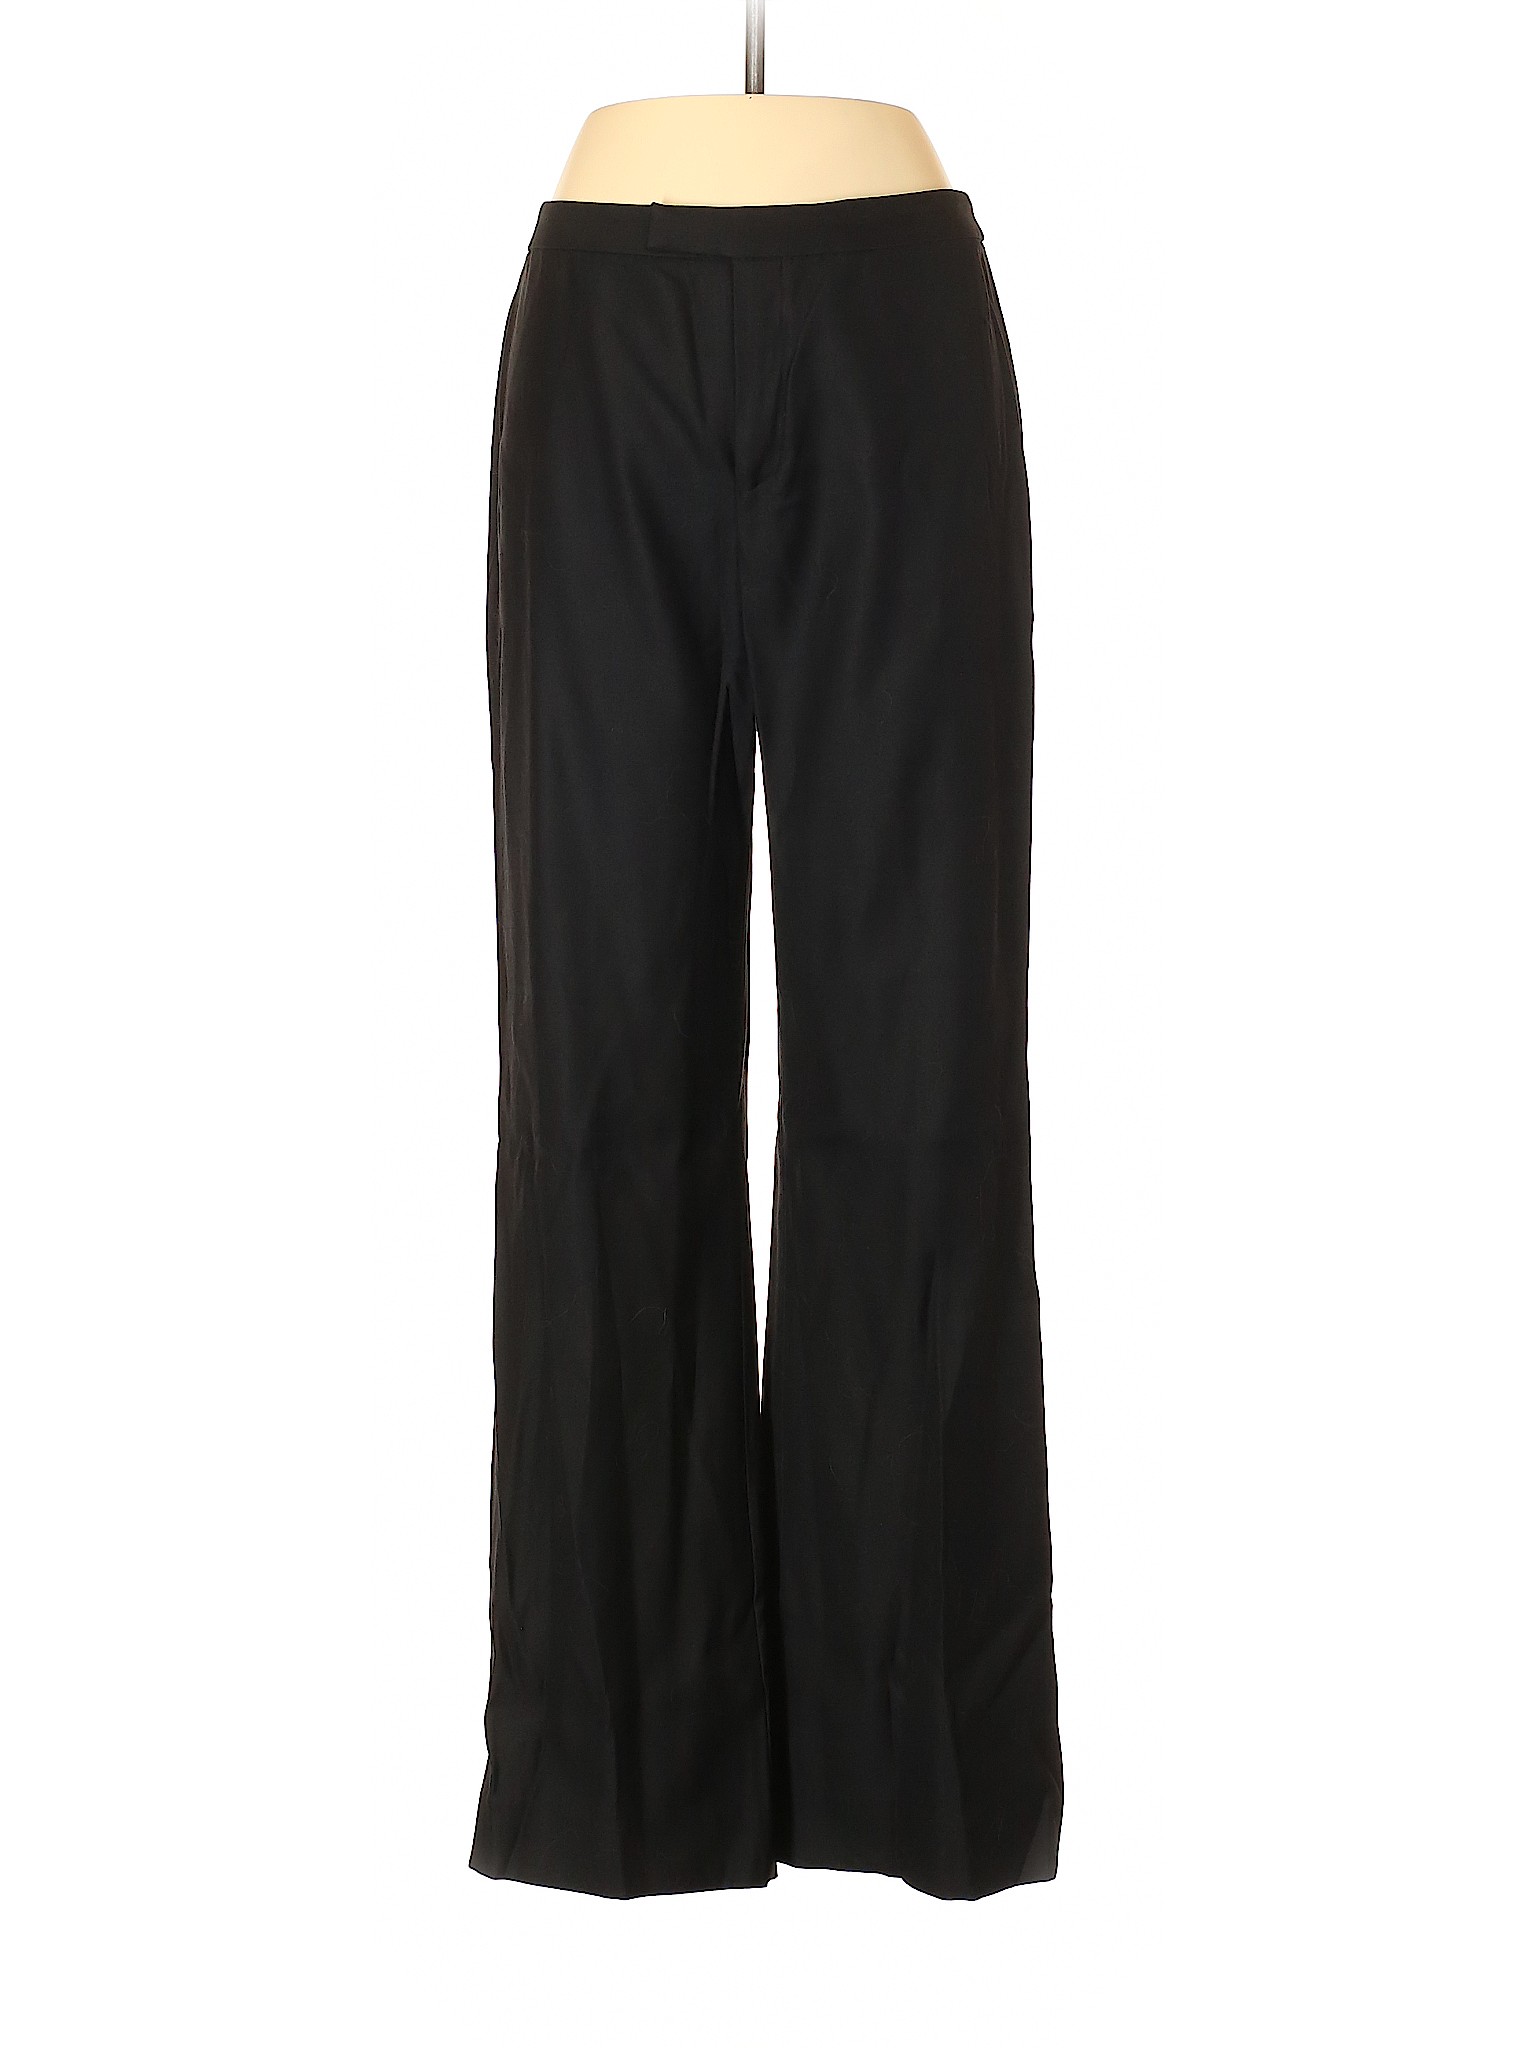 Linda Allard Ellen Tracy Women Black Wool Pants 6 | eBay